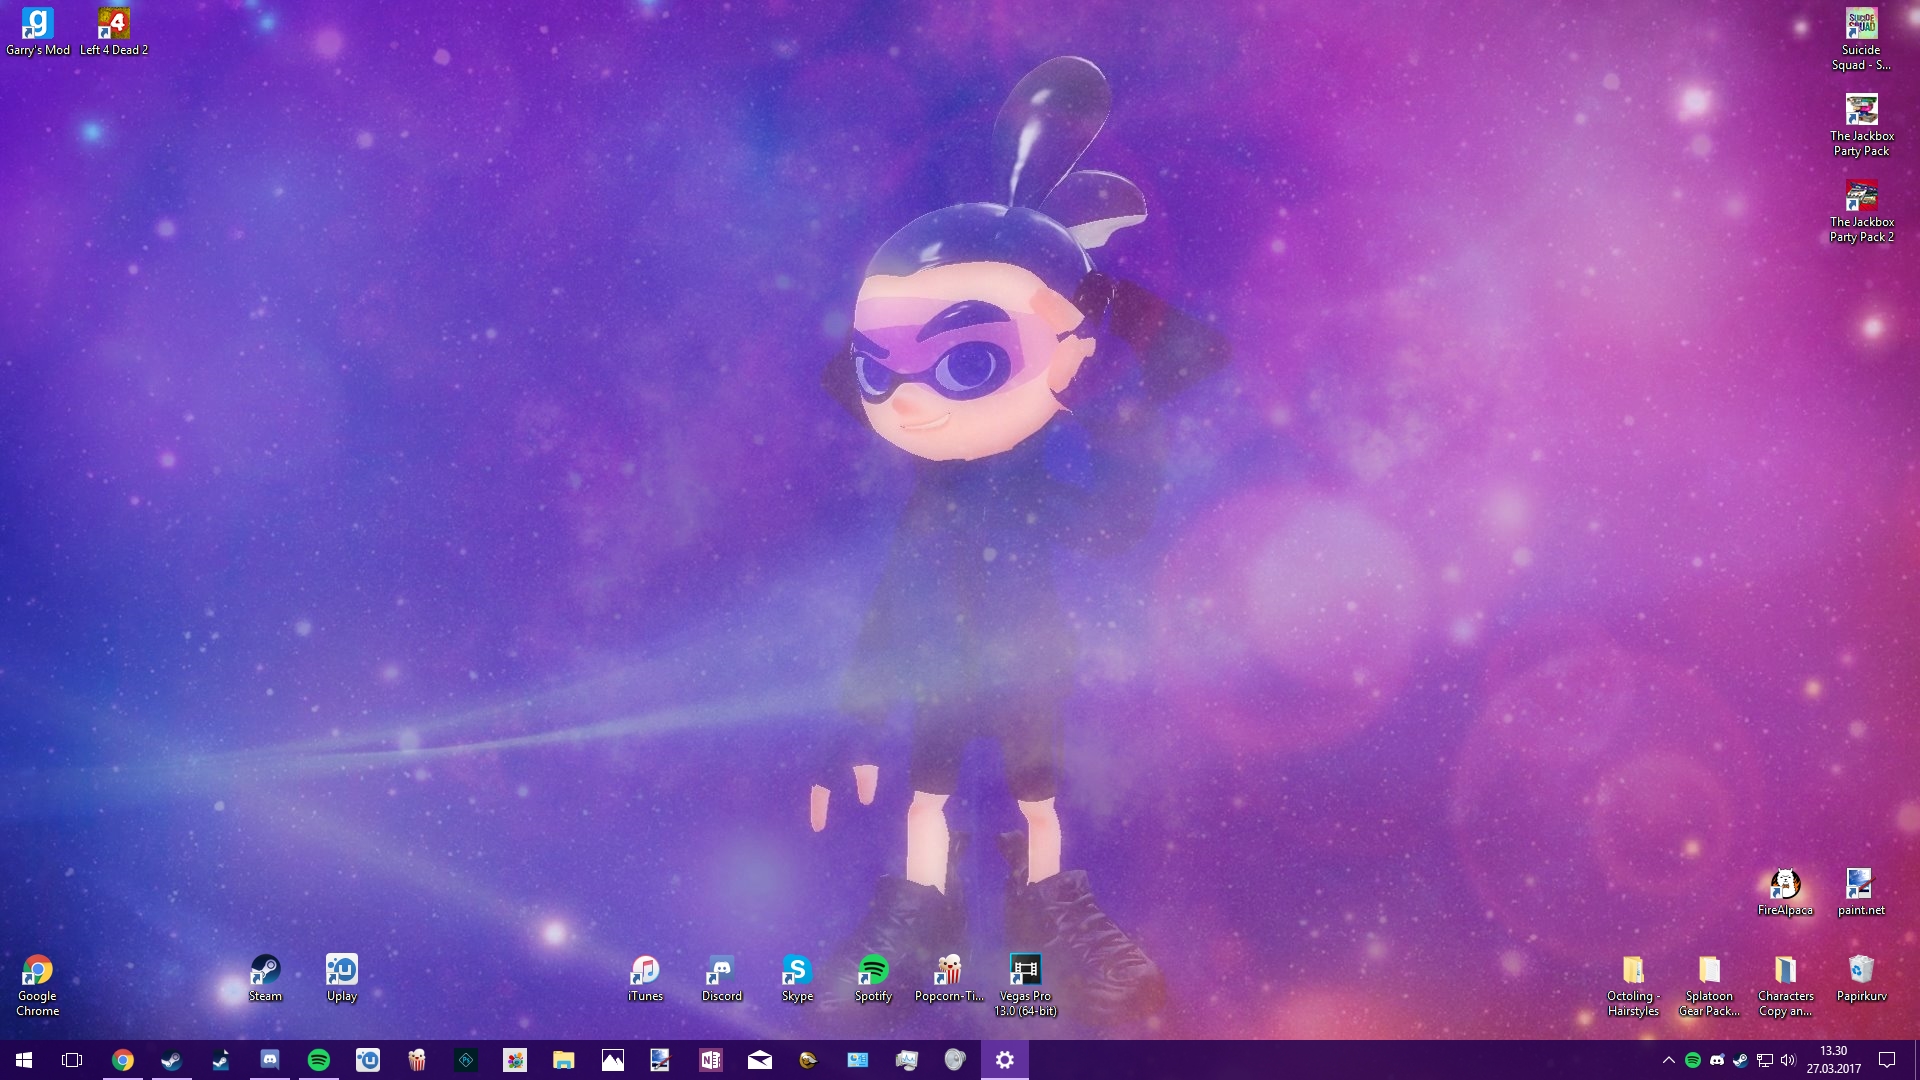 Desktop Background, I guess?